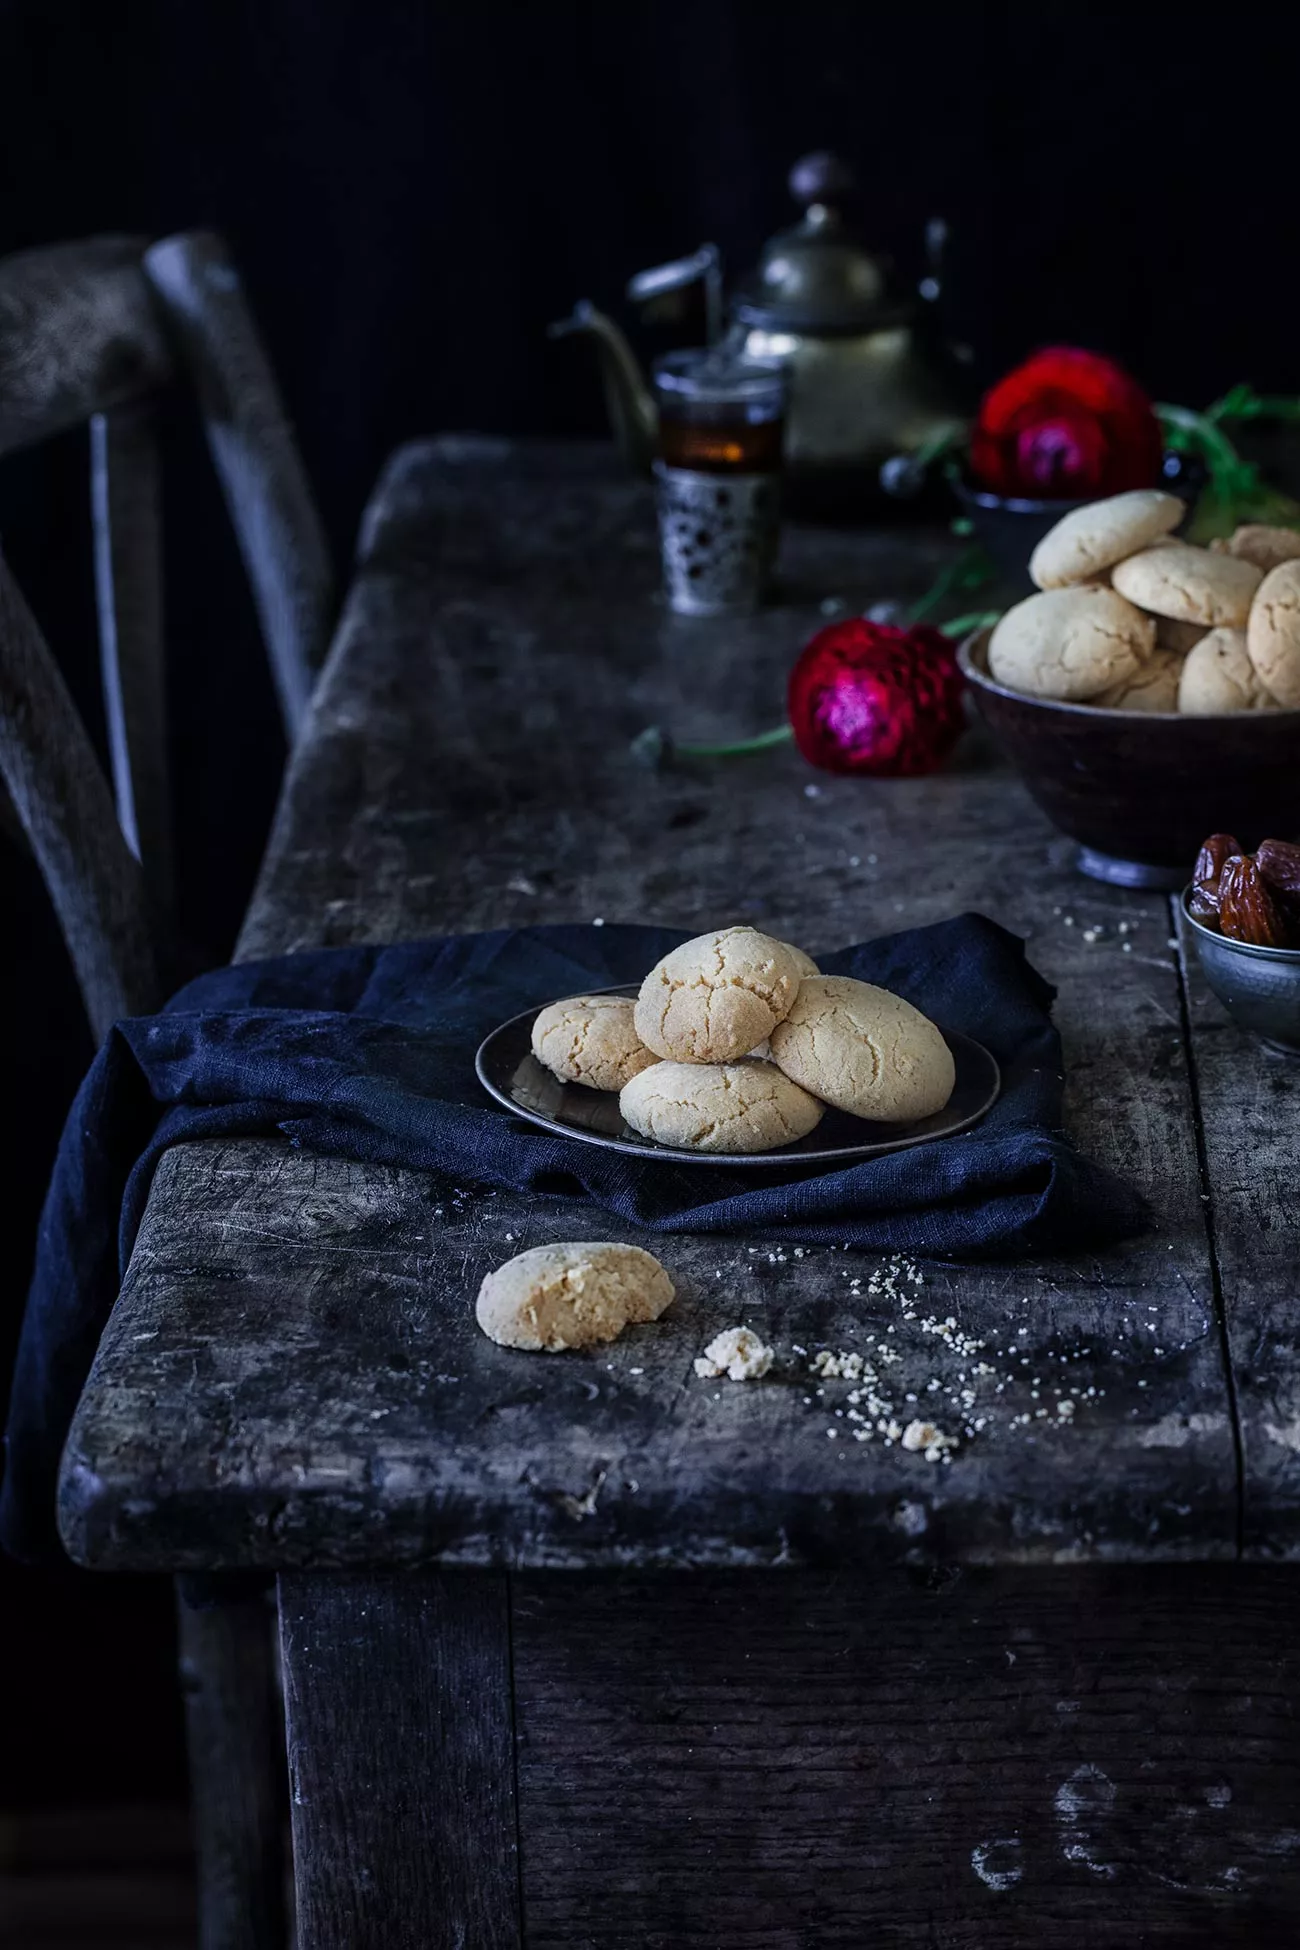 Ghriba-Mandelkekse mit Sesam Heute gibt es Kekse. Nicht nur irgendwelche Kekse, sondern ein Rezept aus meinem neuen Koch- und Backbuch „Marrakesch“. Dazu ein paar Insights zu meinem Buch. 